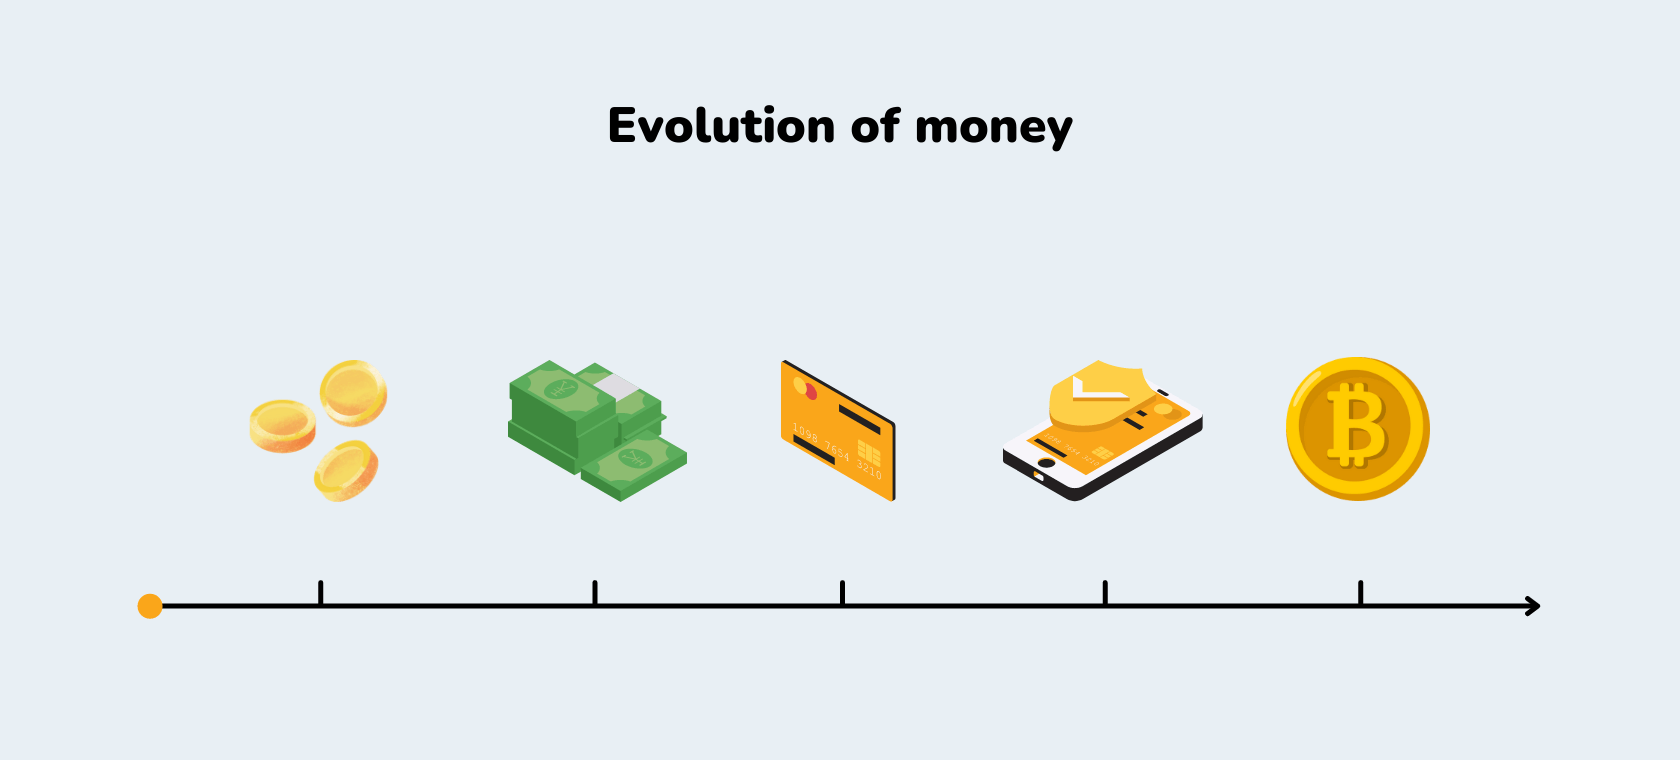 Vremenska crta koja prikazuje evoluciju novca i načine plaćanja kroz povijest.